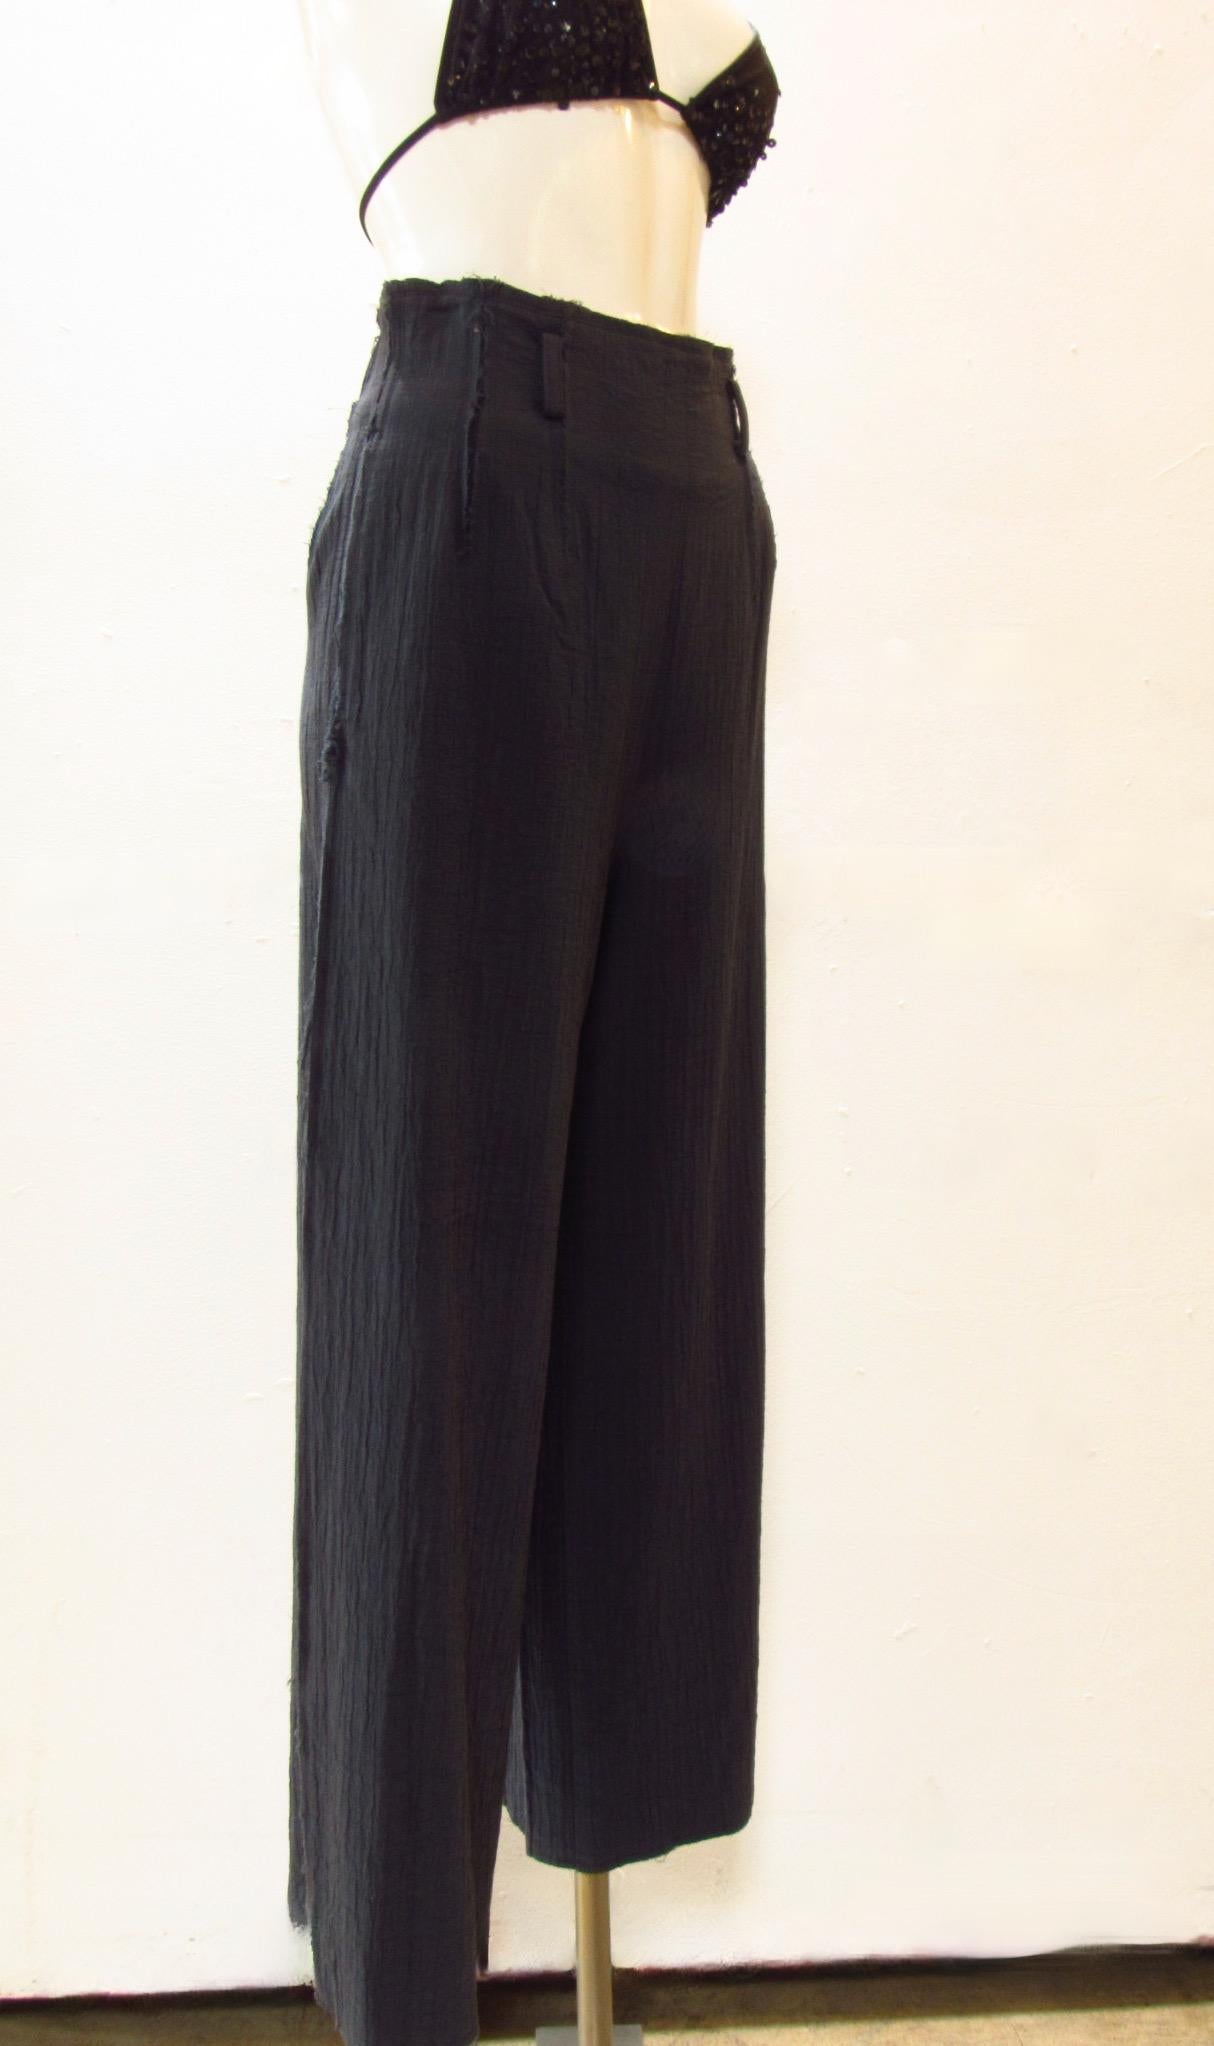 Hose aus dicker Baumwolle mit hoher Taille von Vintage Matsuda mit Reißverschluss hinten, Gürtelschlaufen und schrägen Seitentaschen. Die Nähte sind grobkantig und fransen aus.